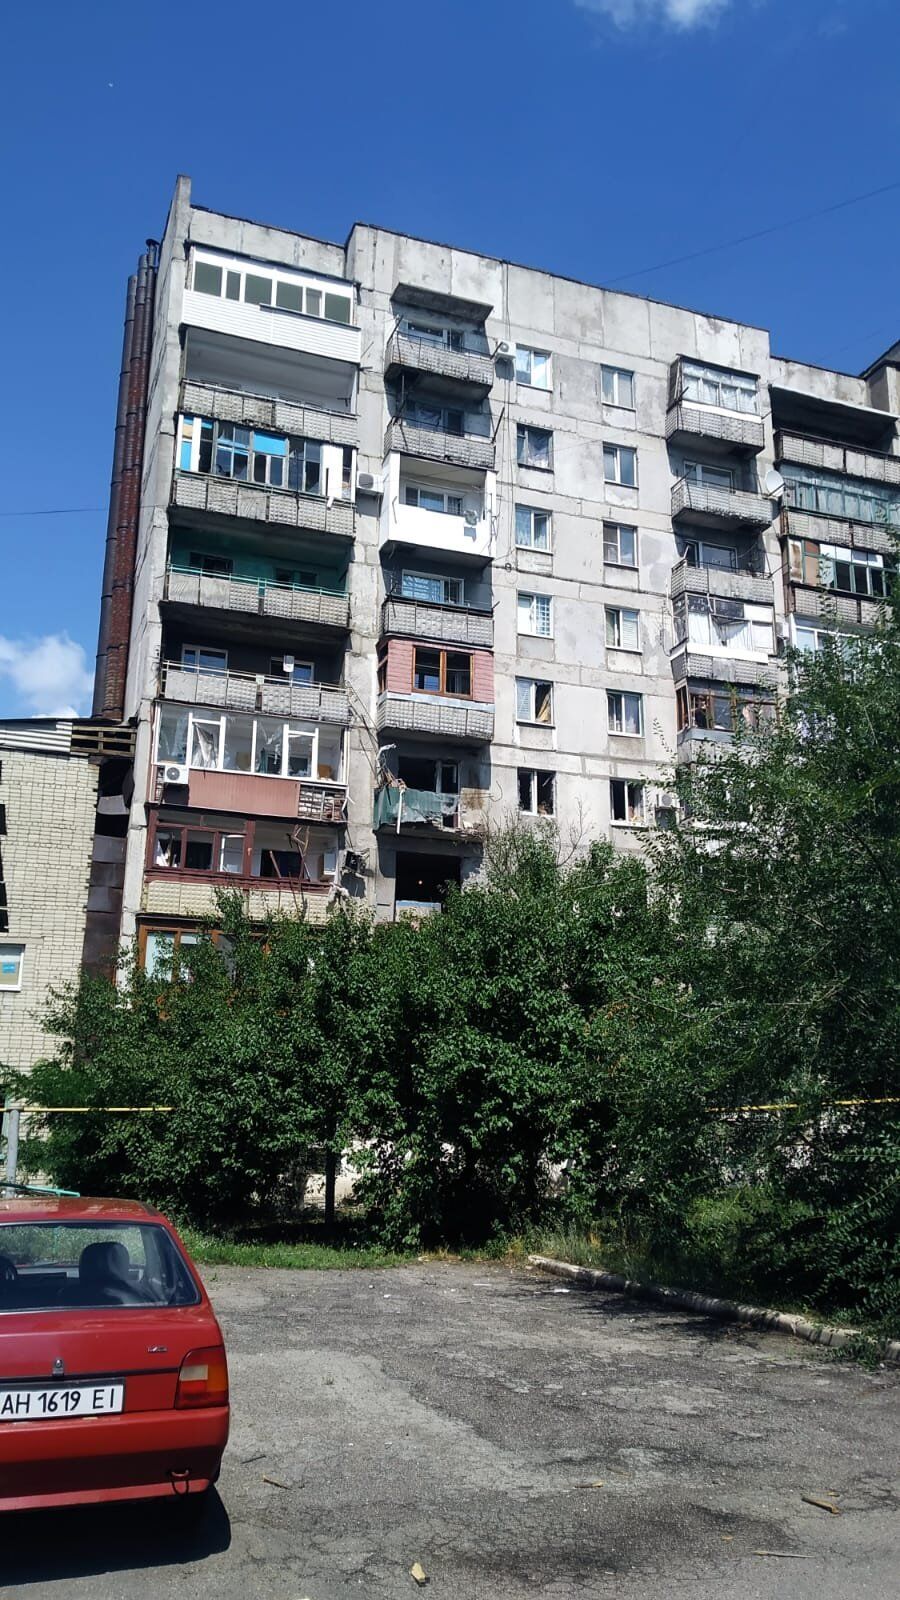 Погибли около 10 человек: оккупанты обстреляли остановку в Торецке Донецкой области (фото)